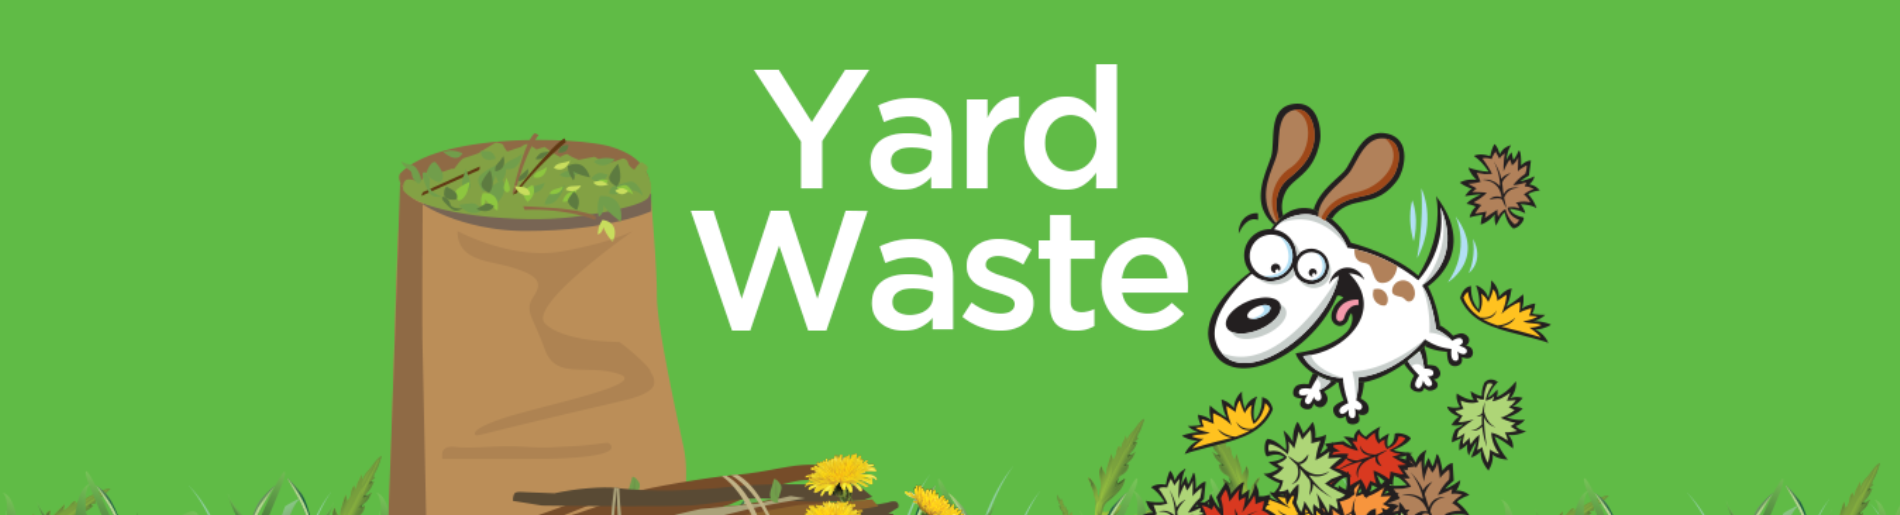 yard waste